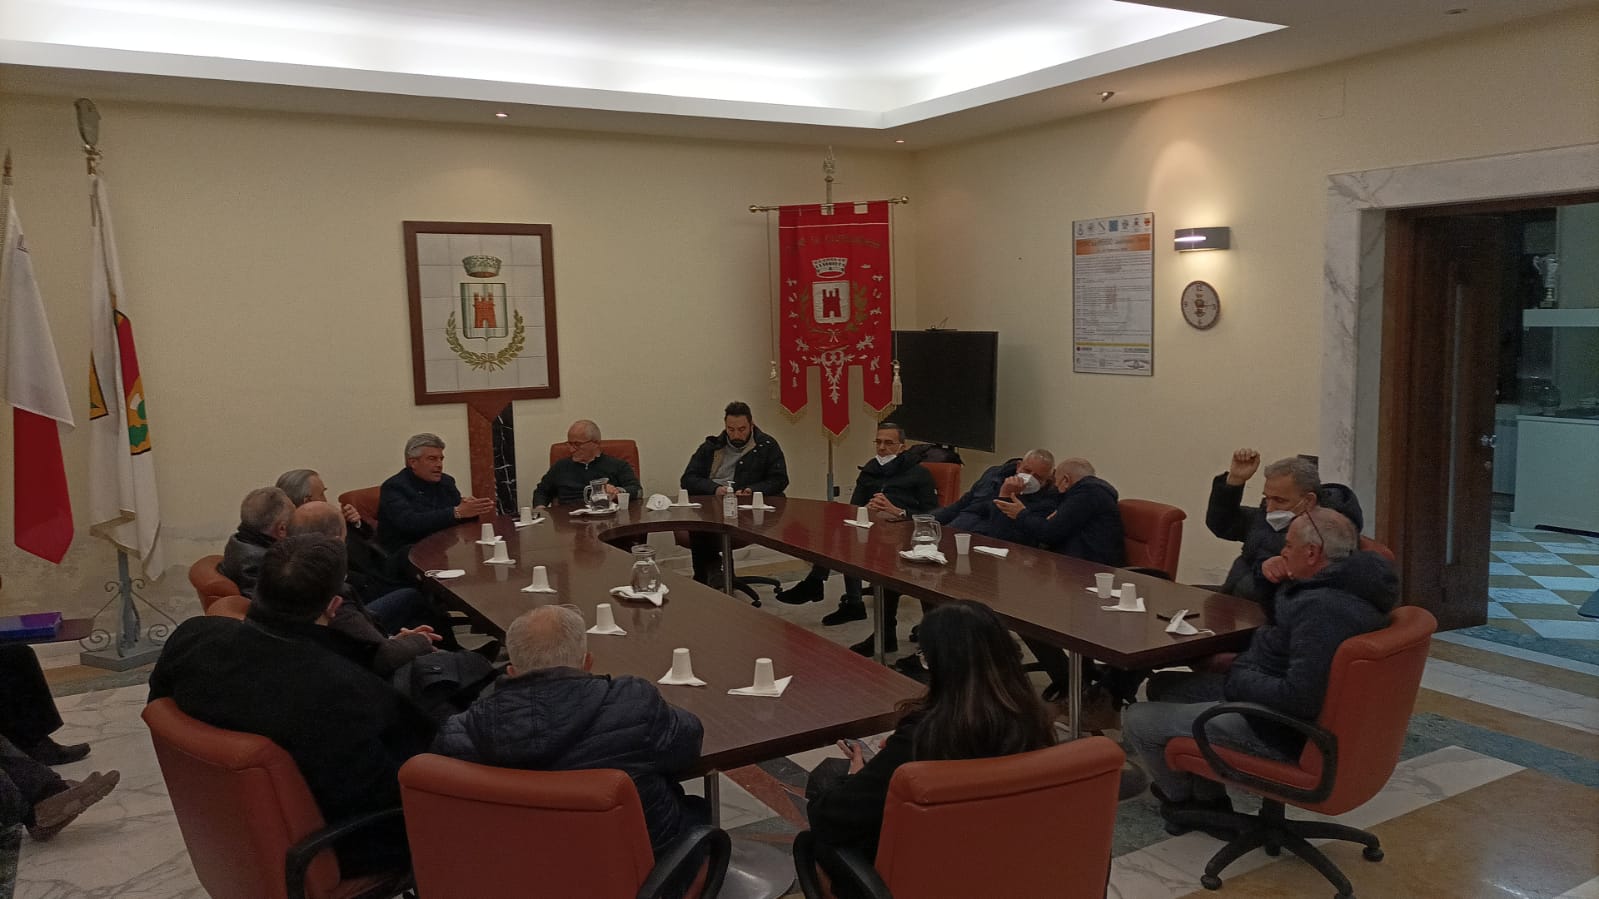 Riuniti a Castelvenere i sindaci del Titerno e dell’Alto Tammaro